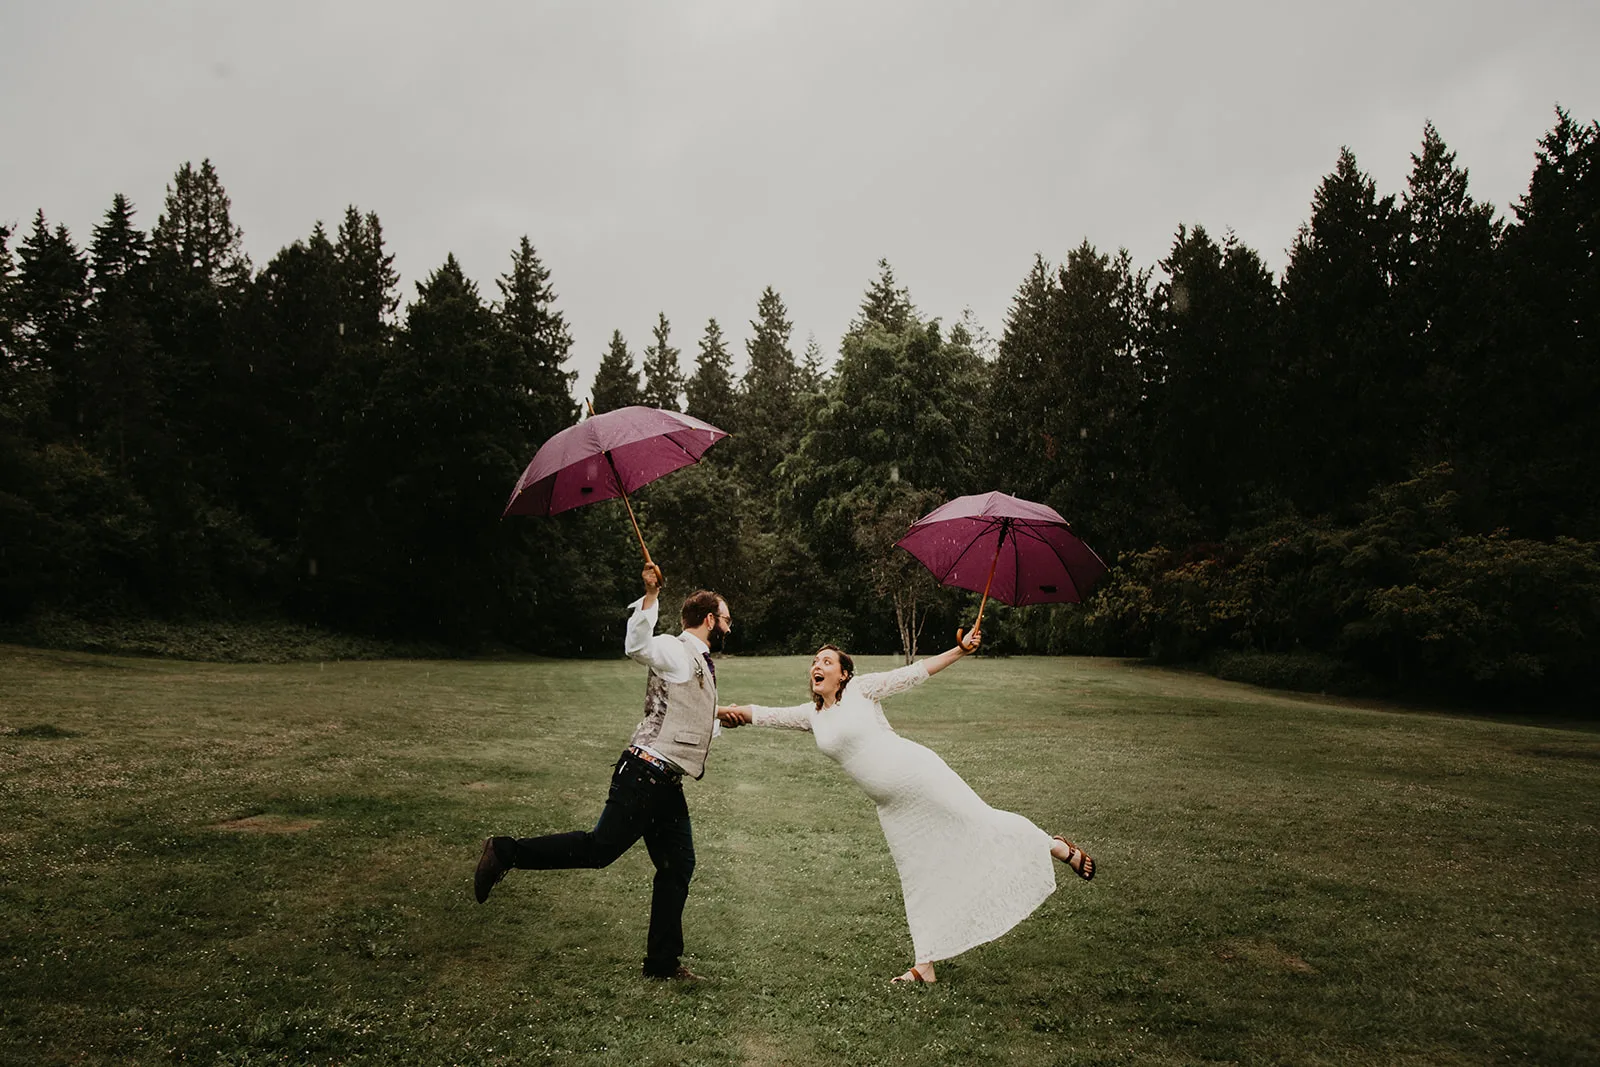 Bride and groom with umbrellas in Queen Elizabeth Park